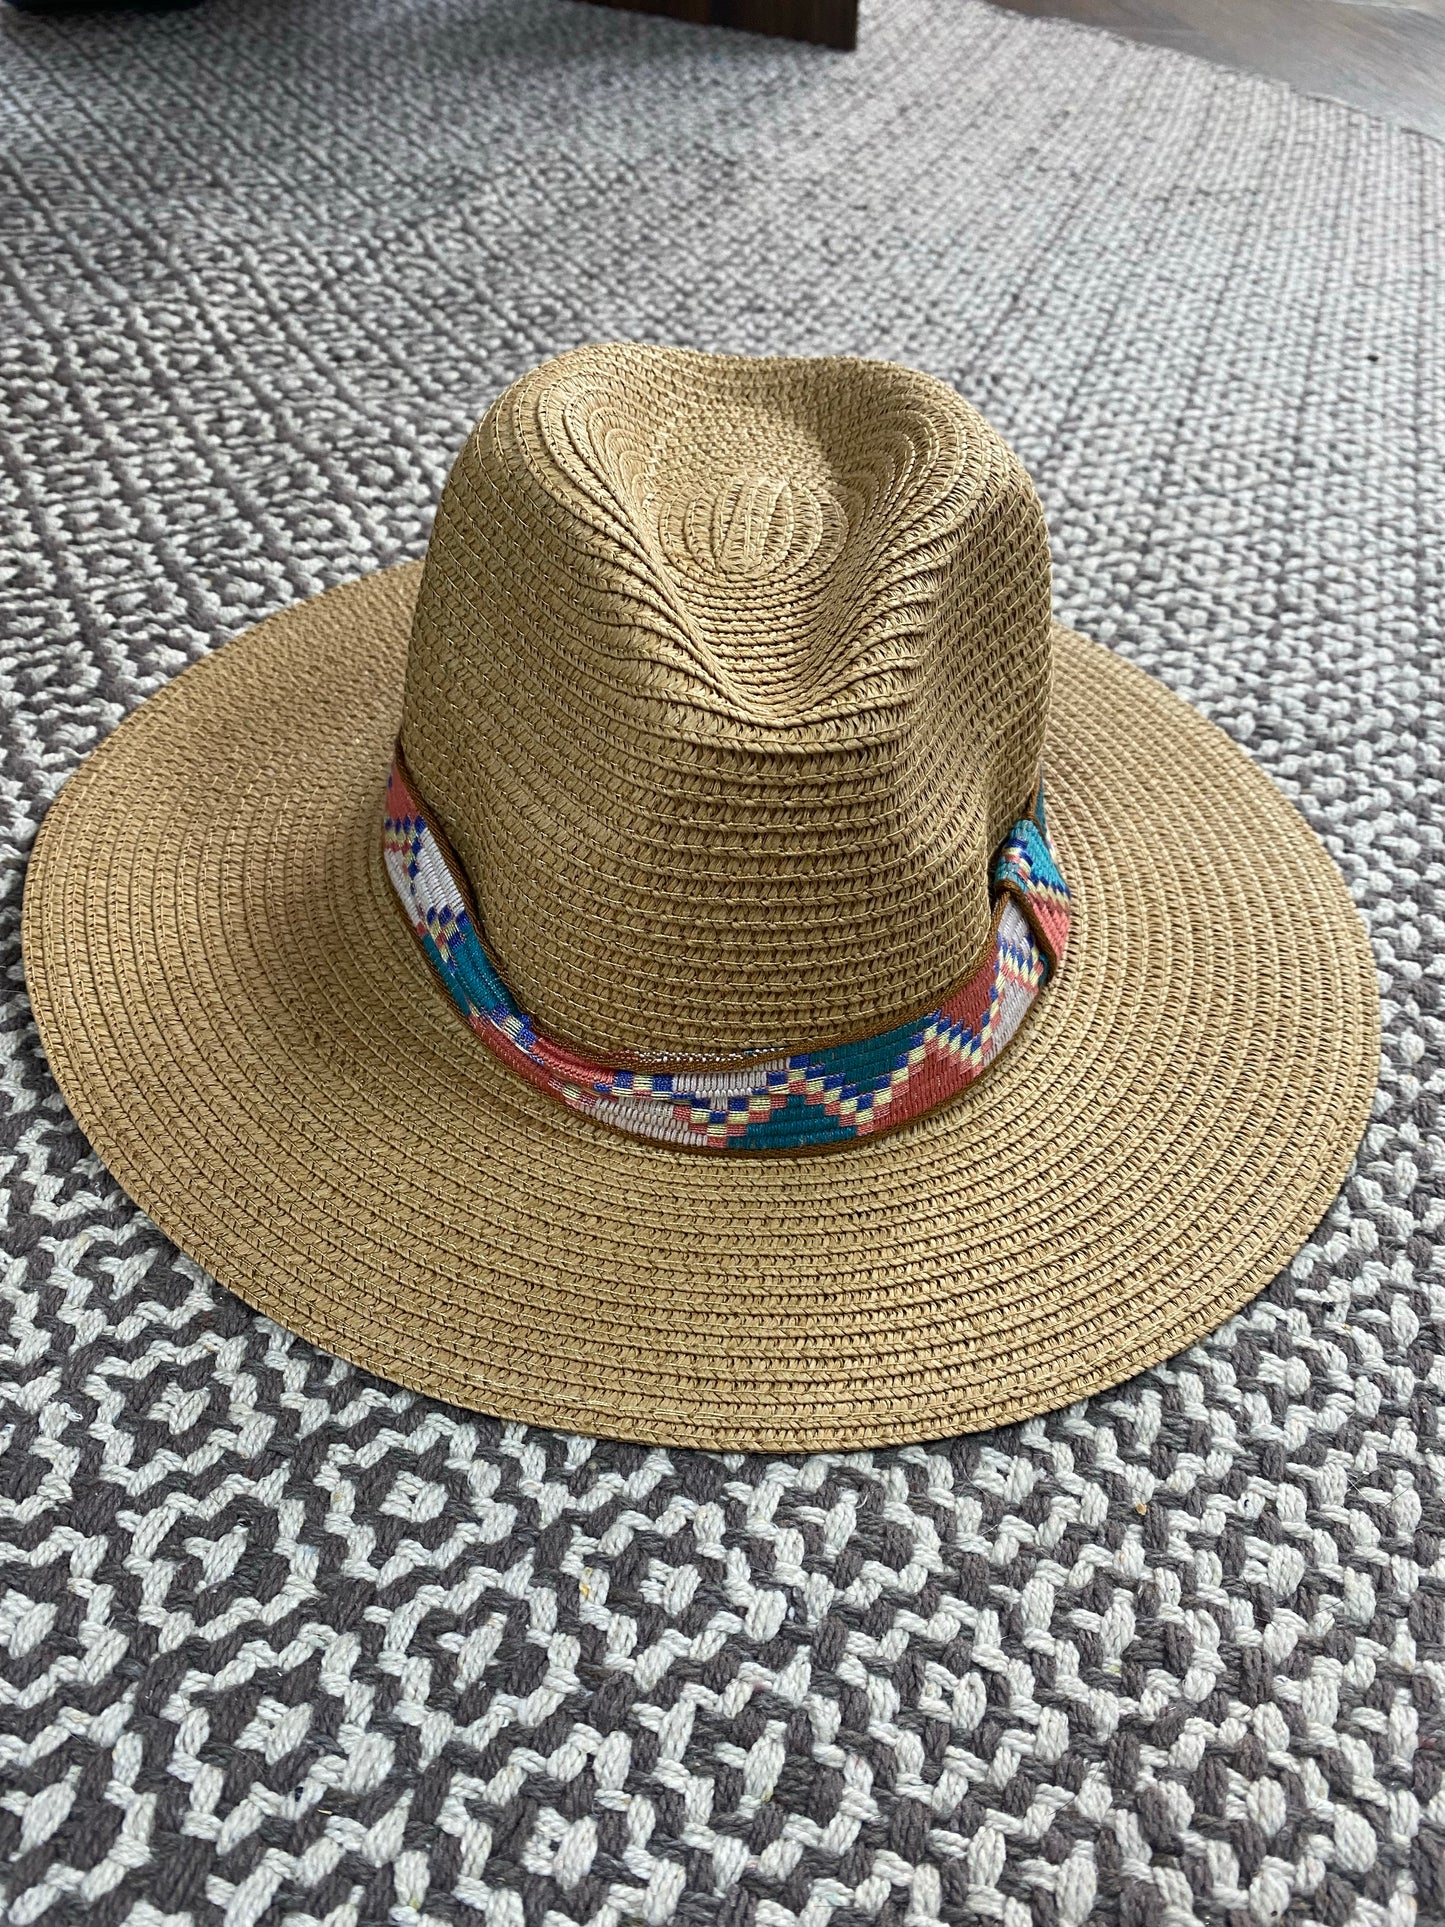 Womens hat Outdoor Spring Straw Beach Hat (darker color)